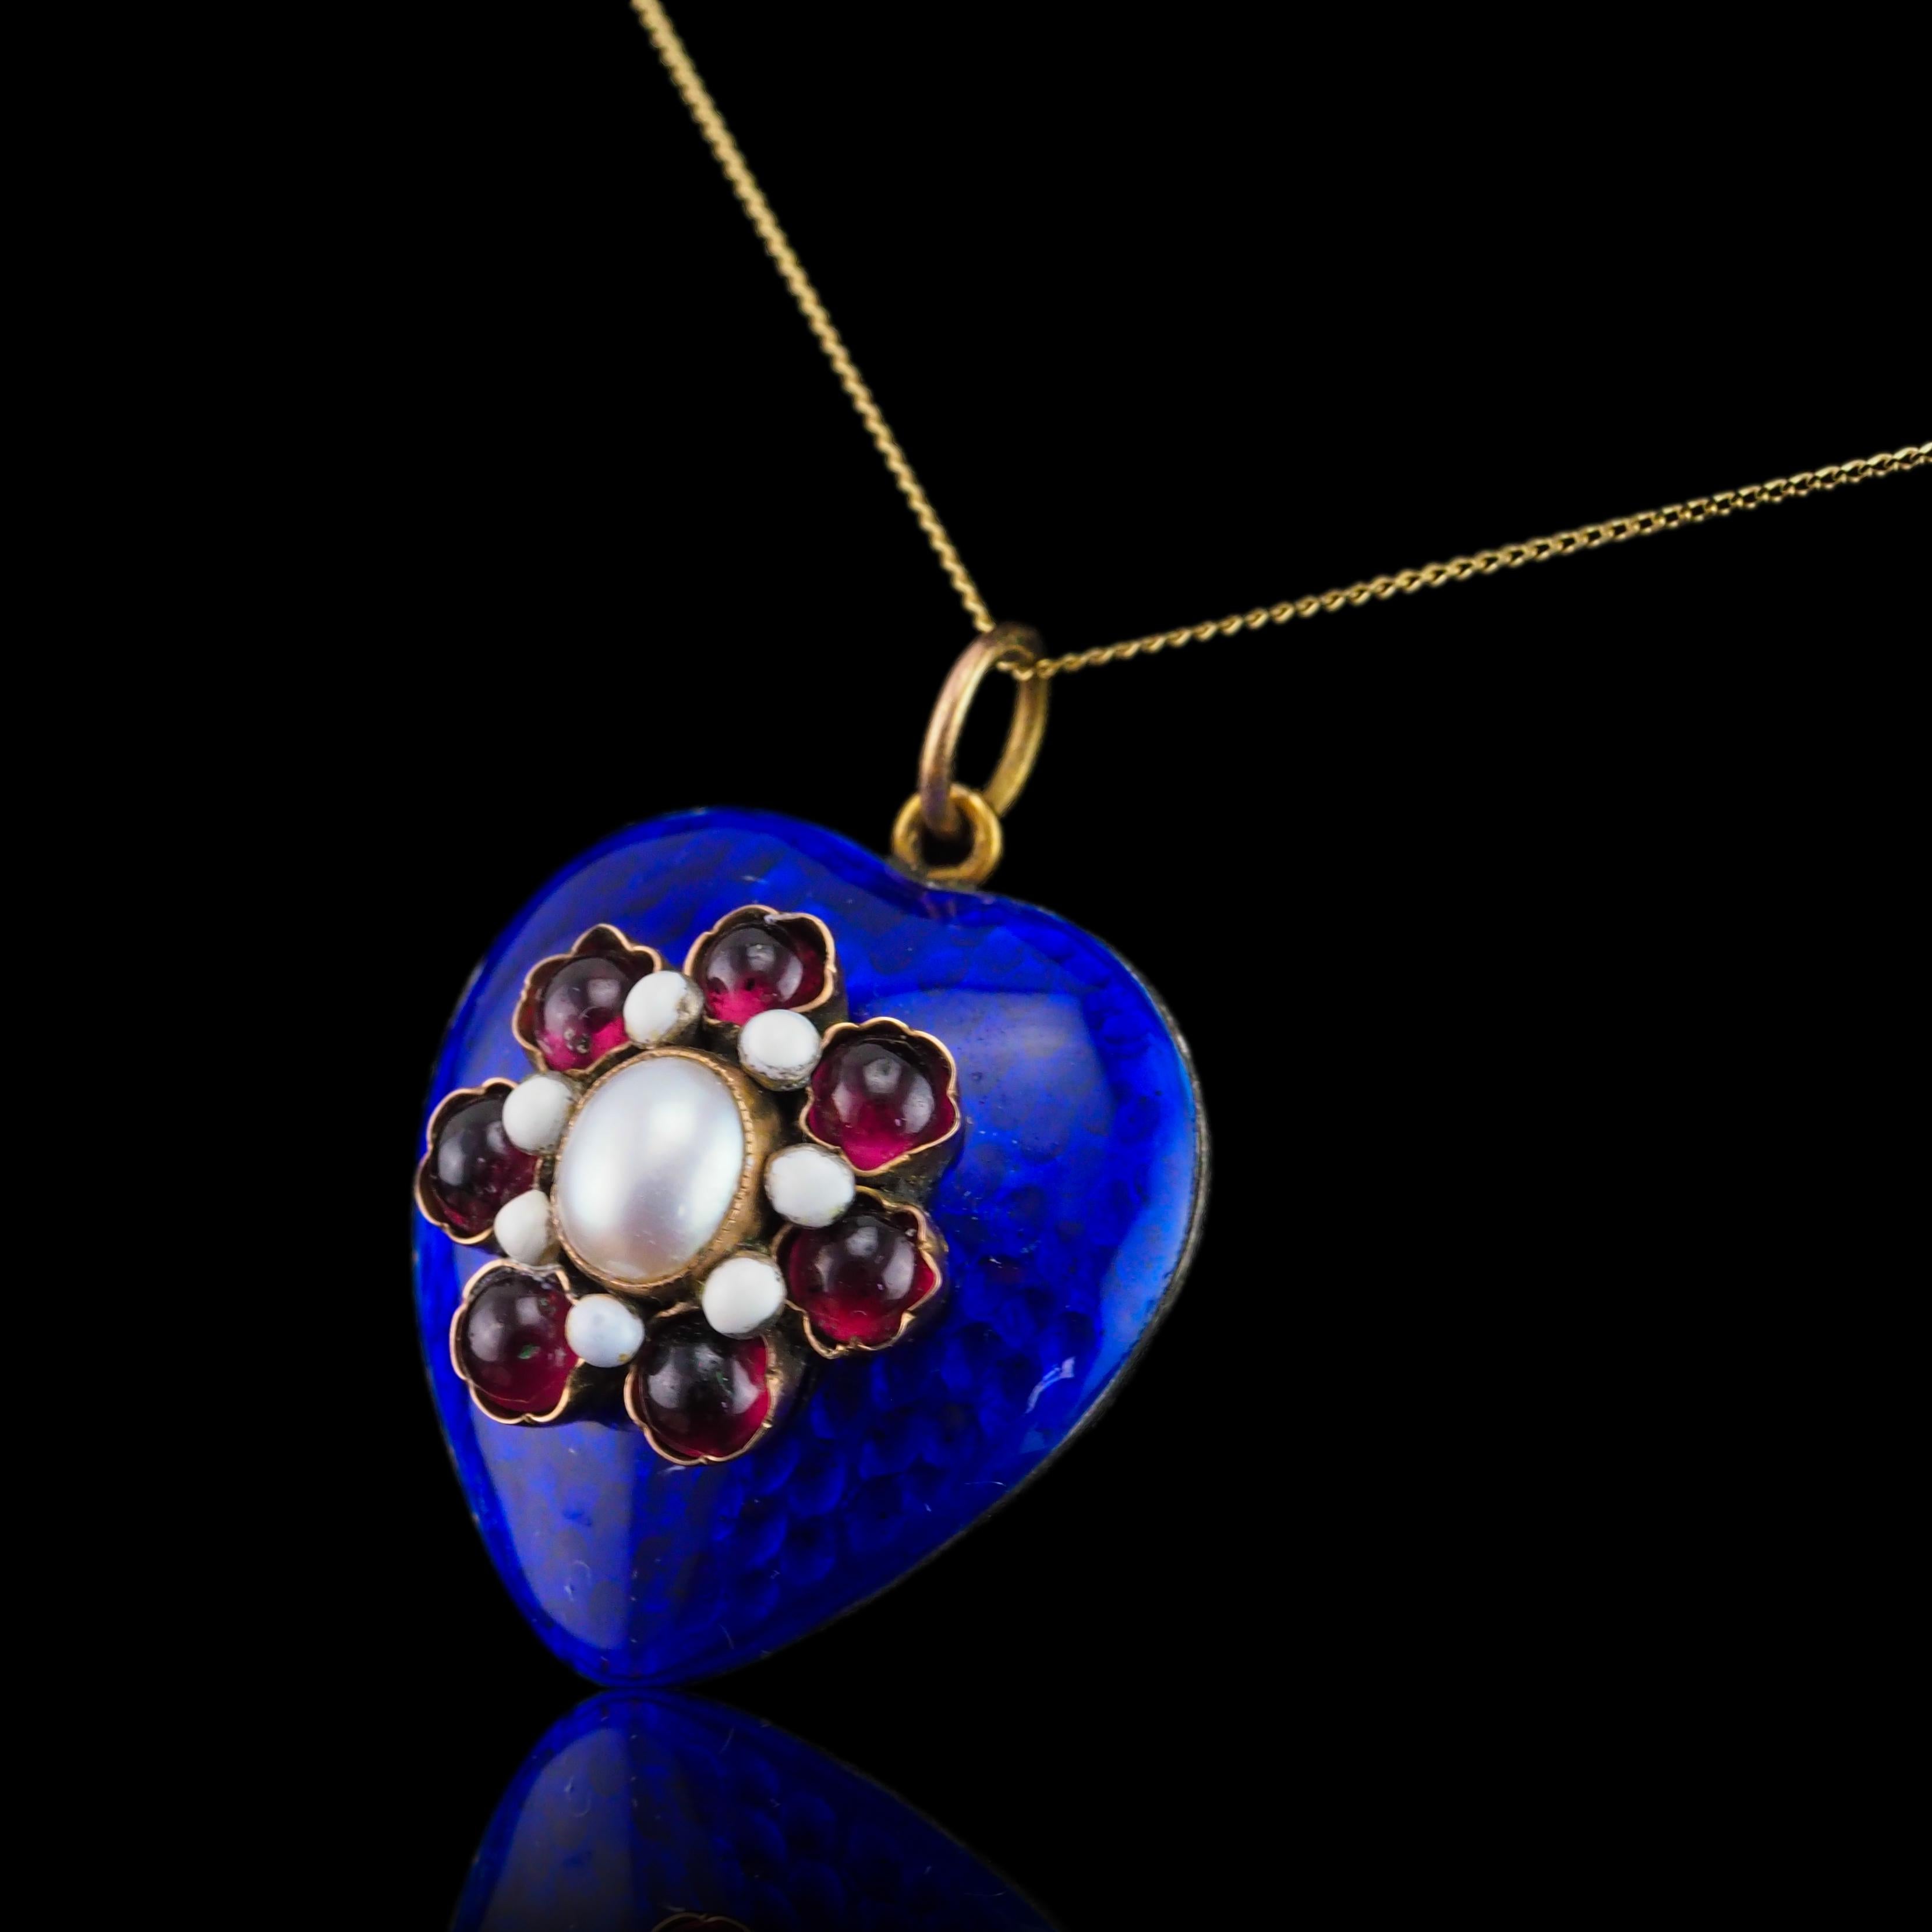 Antique Victorian Blue Enamel Garnet Heart Necklace 'Puffy' Pendant - c.1900 For Sale 5